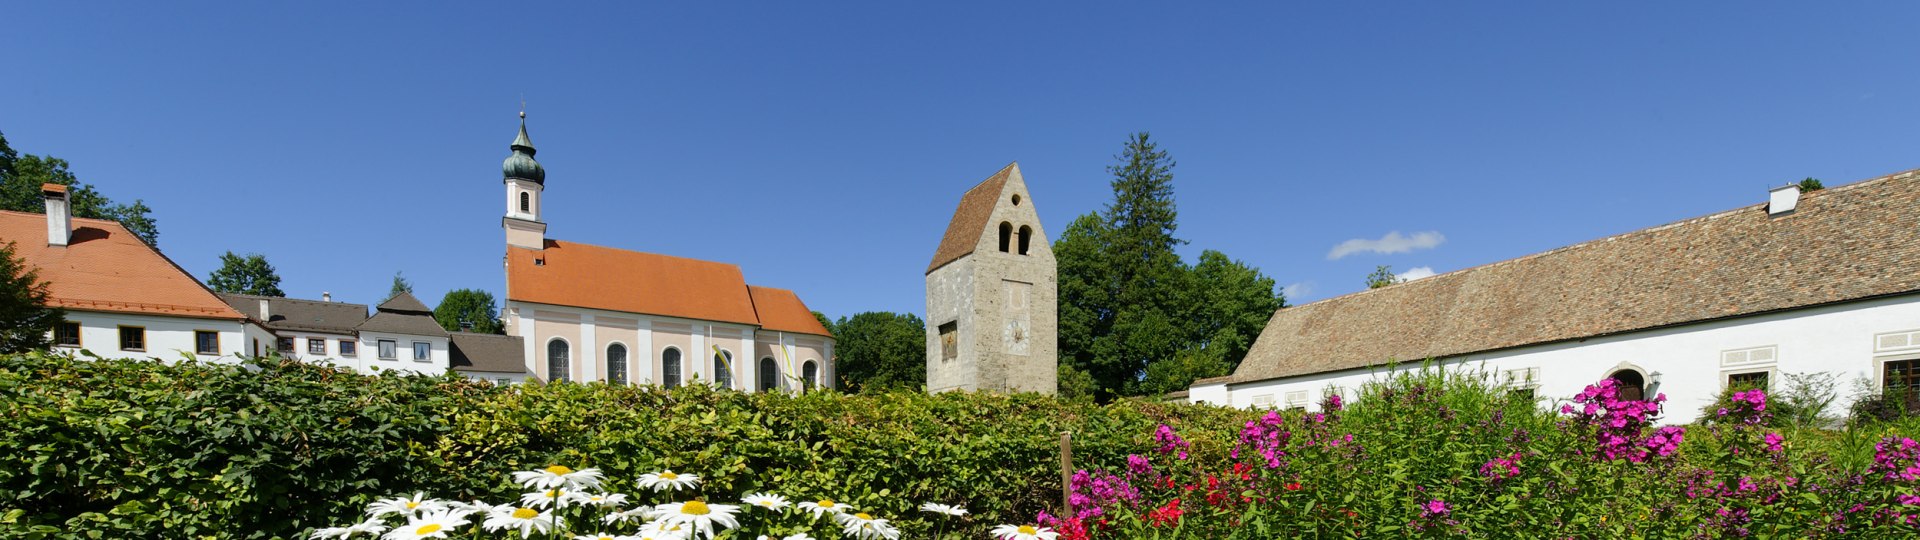 Kloster Wessobrunn, © Lisa Bahnmüller